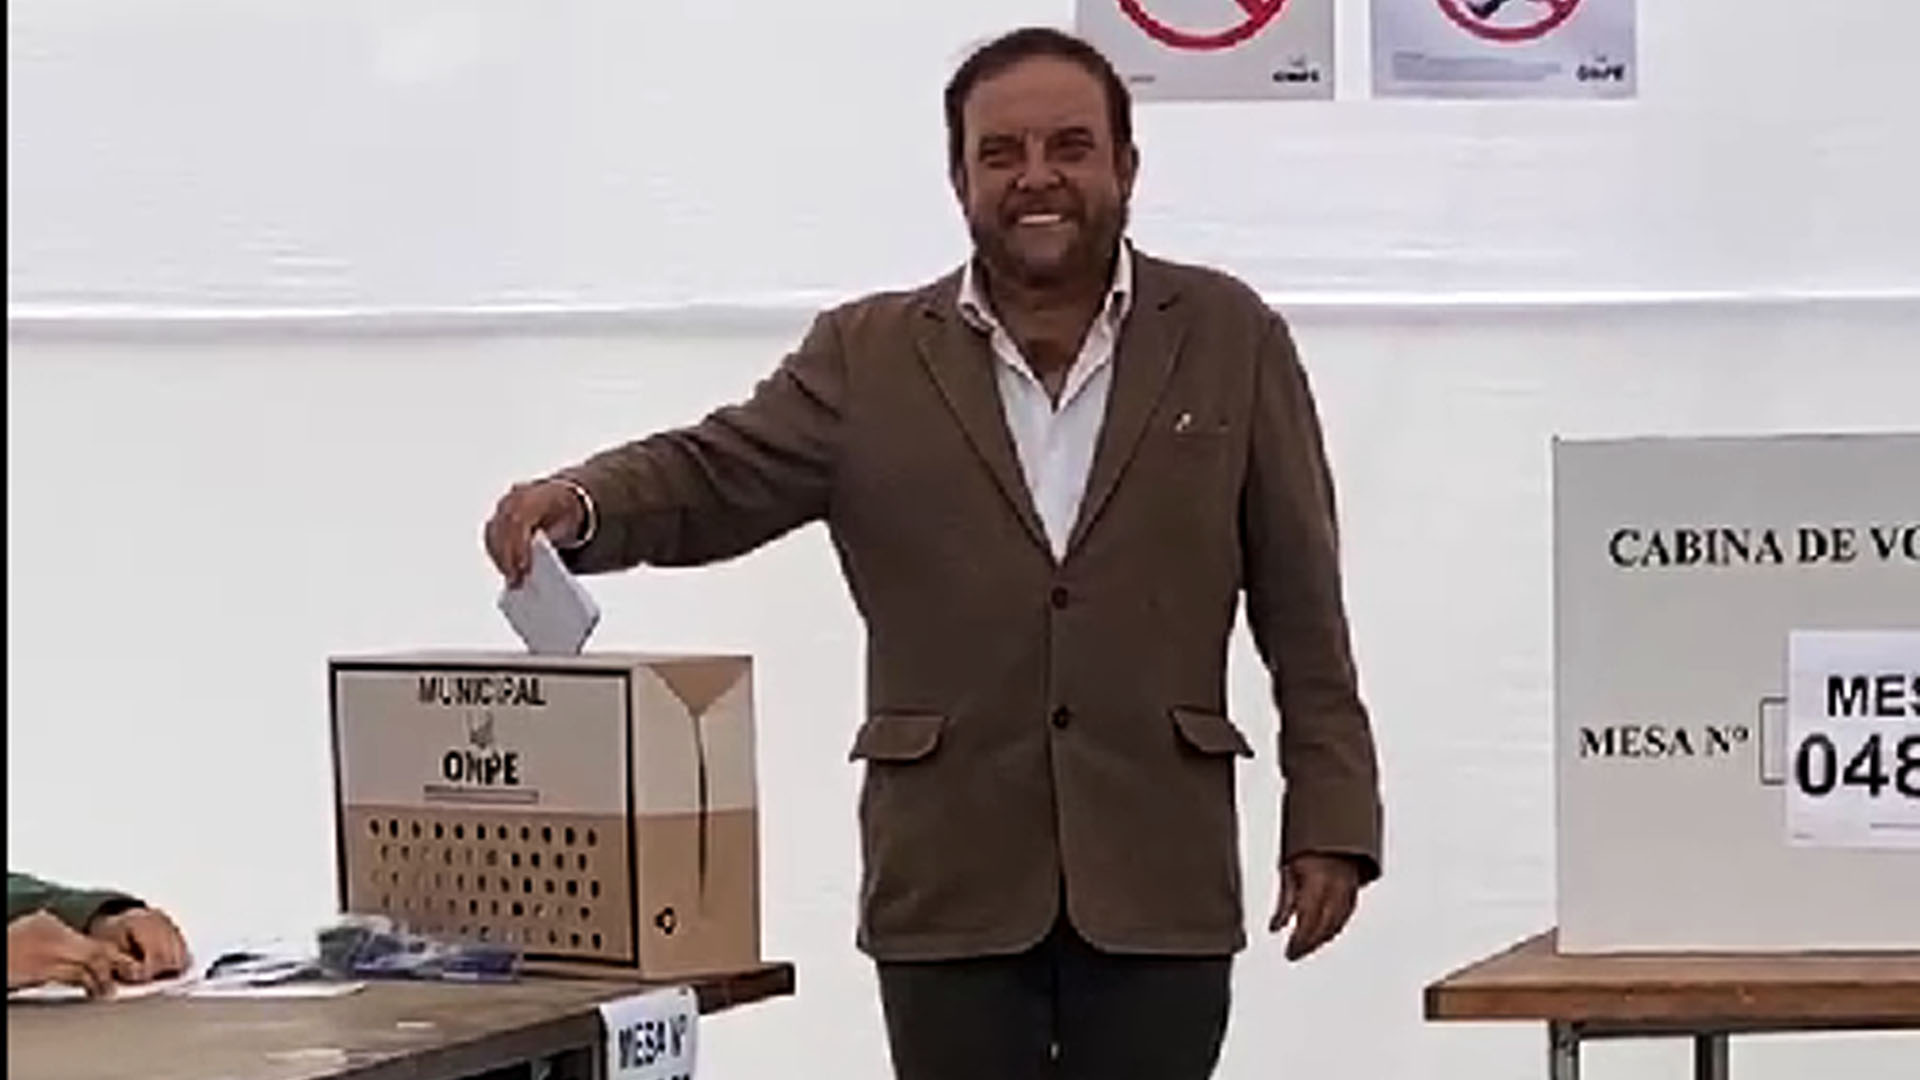 Gonzalo Alegria voto en Surco.